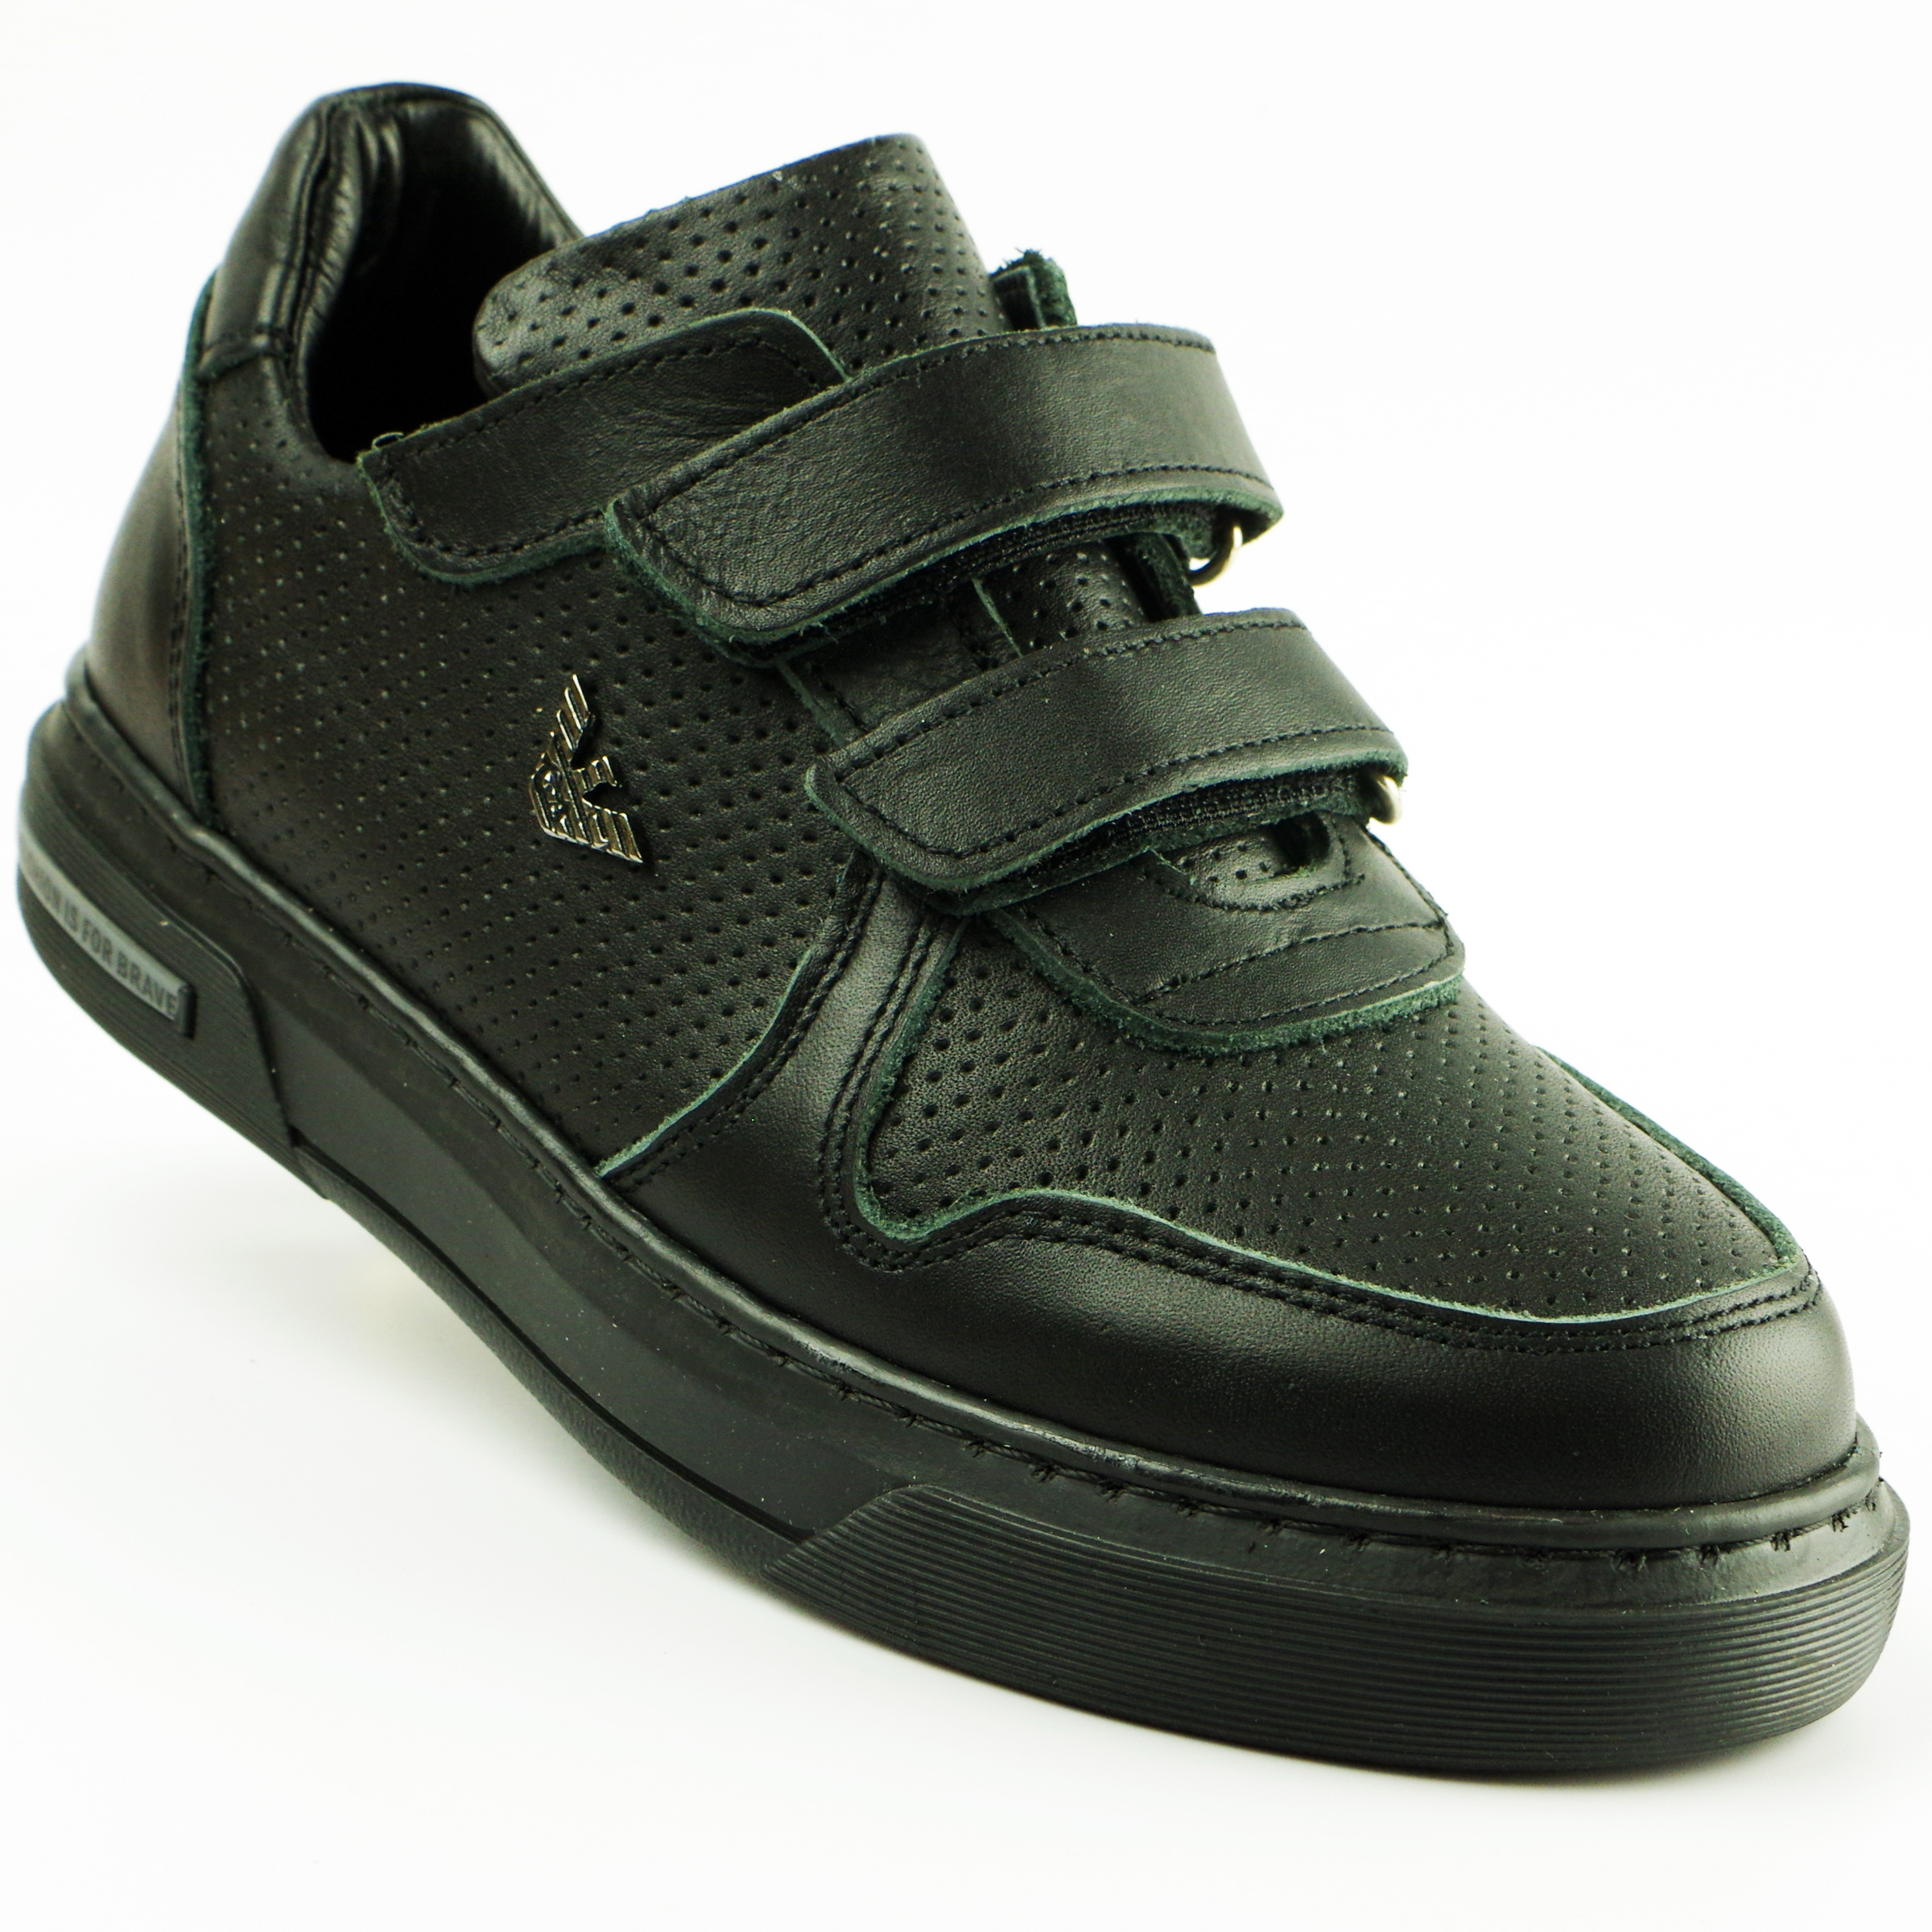 Туфлі дитячі (2119) для хлопчика, матеріал Натуральна шкіра, Чорний колір, 31-36 розміри – Sole Kids. Фото 2